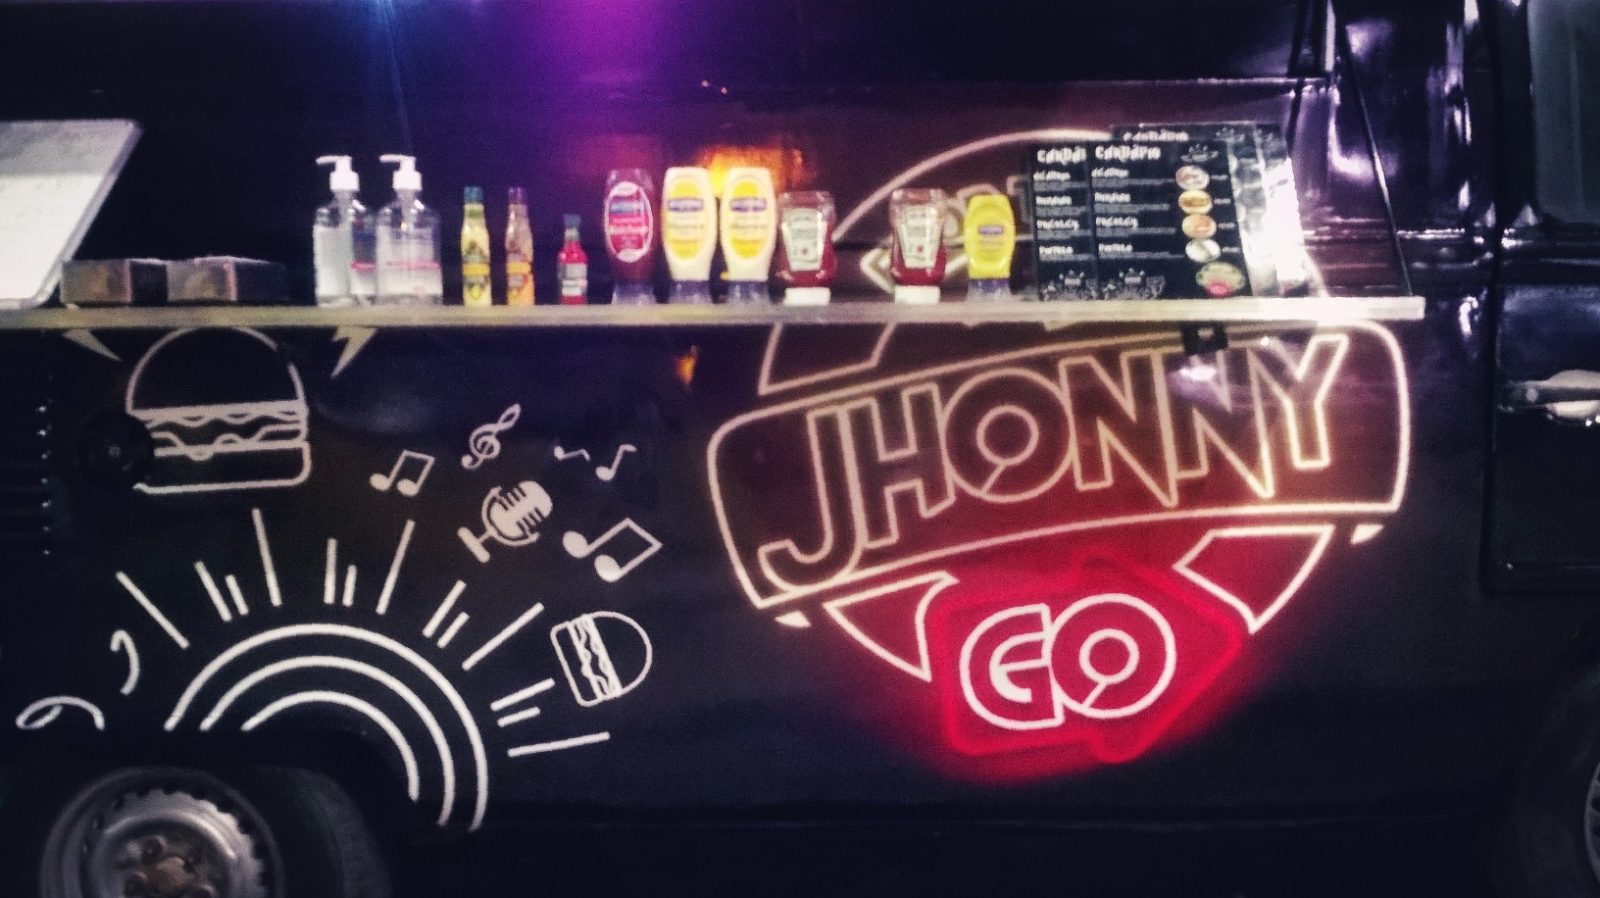 Diferentes condimentos são disponíveis para dar mais sabor aos hambúrgueres do Jhonny Go Food Truck. Foto Jan Messias